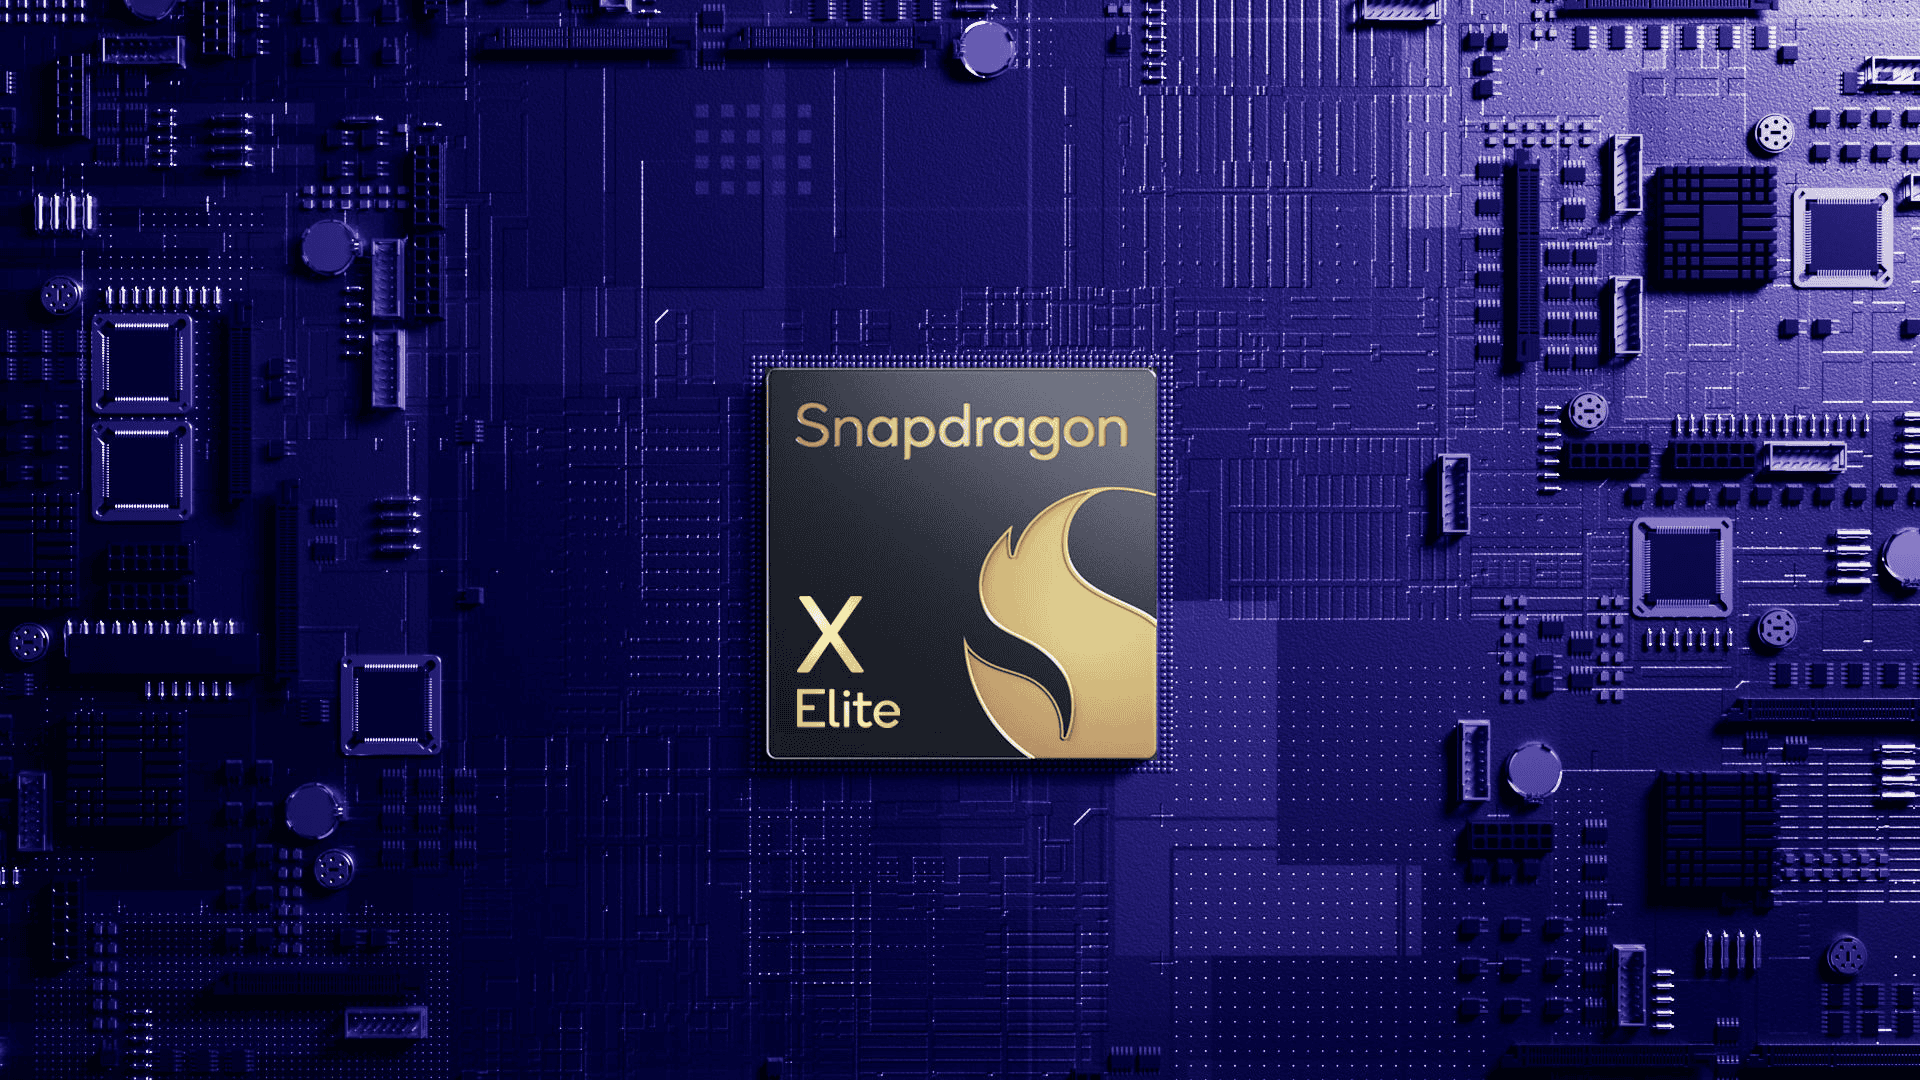 Testes revelam que o processador Snapdragon X Elite perde para o chip do iPhone 12 Mini